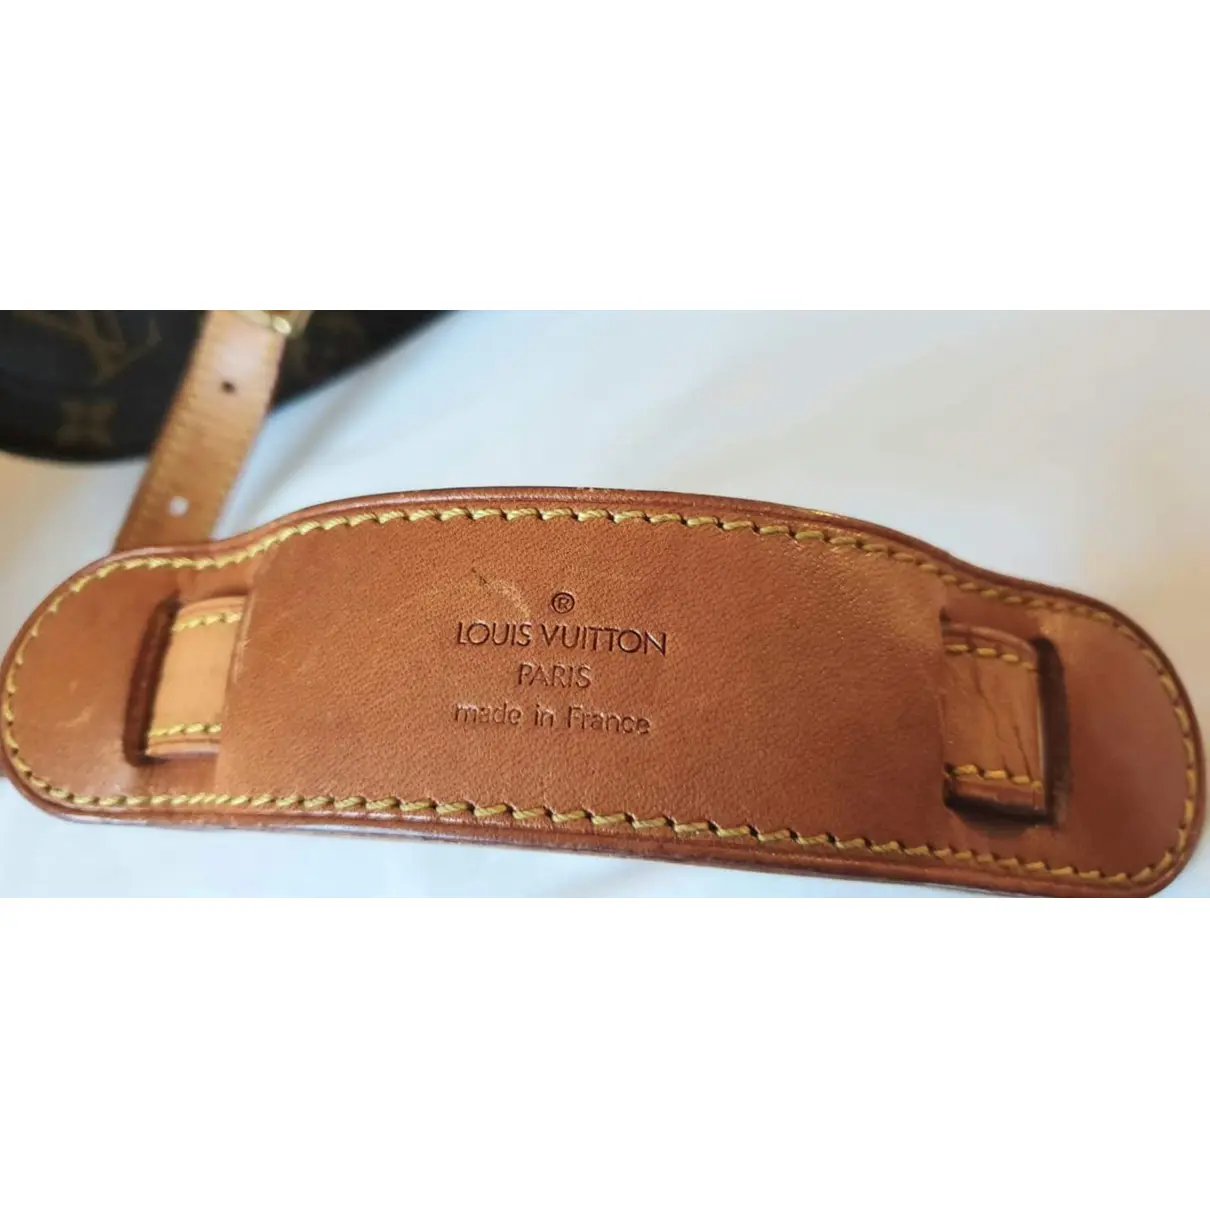 Buy Louis Vuitton Saint Cloud vintage crossbody bag online